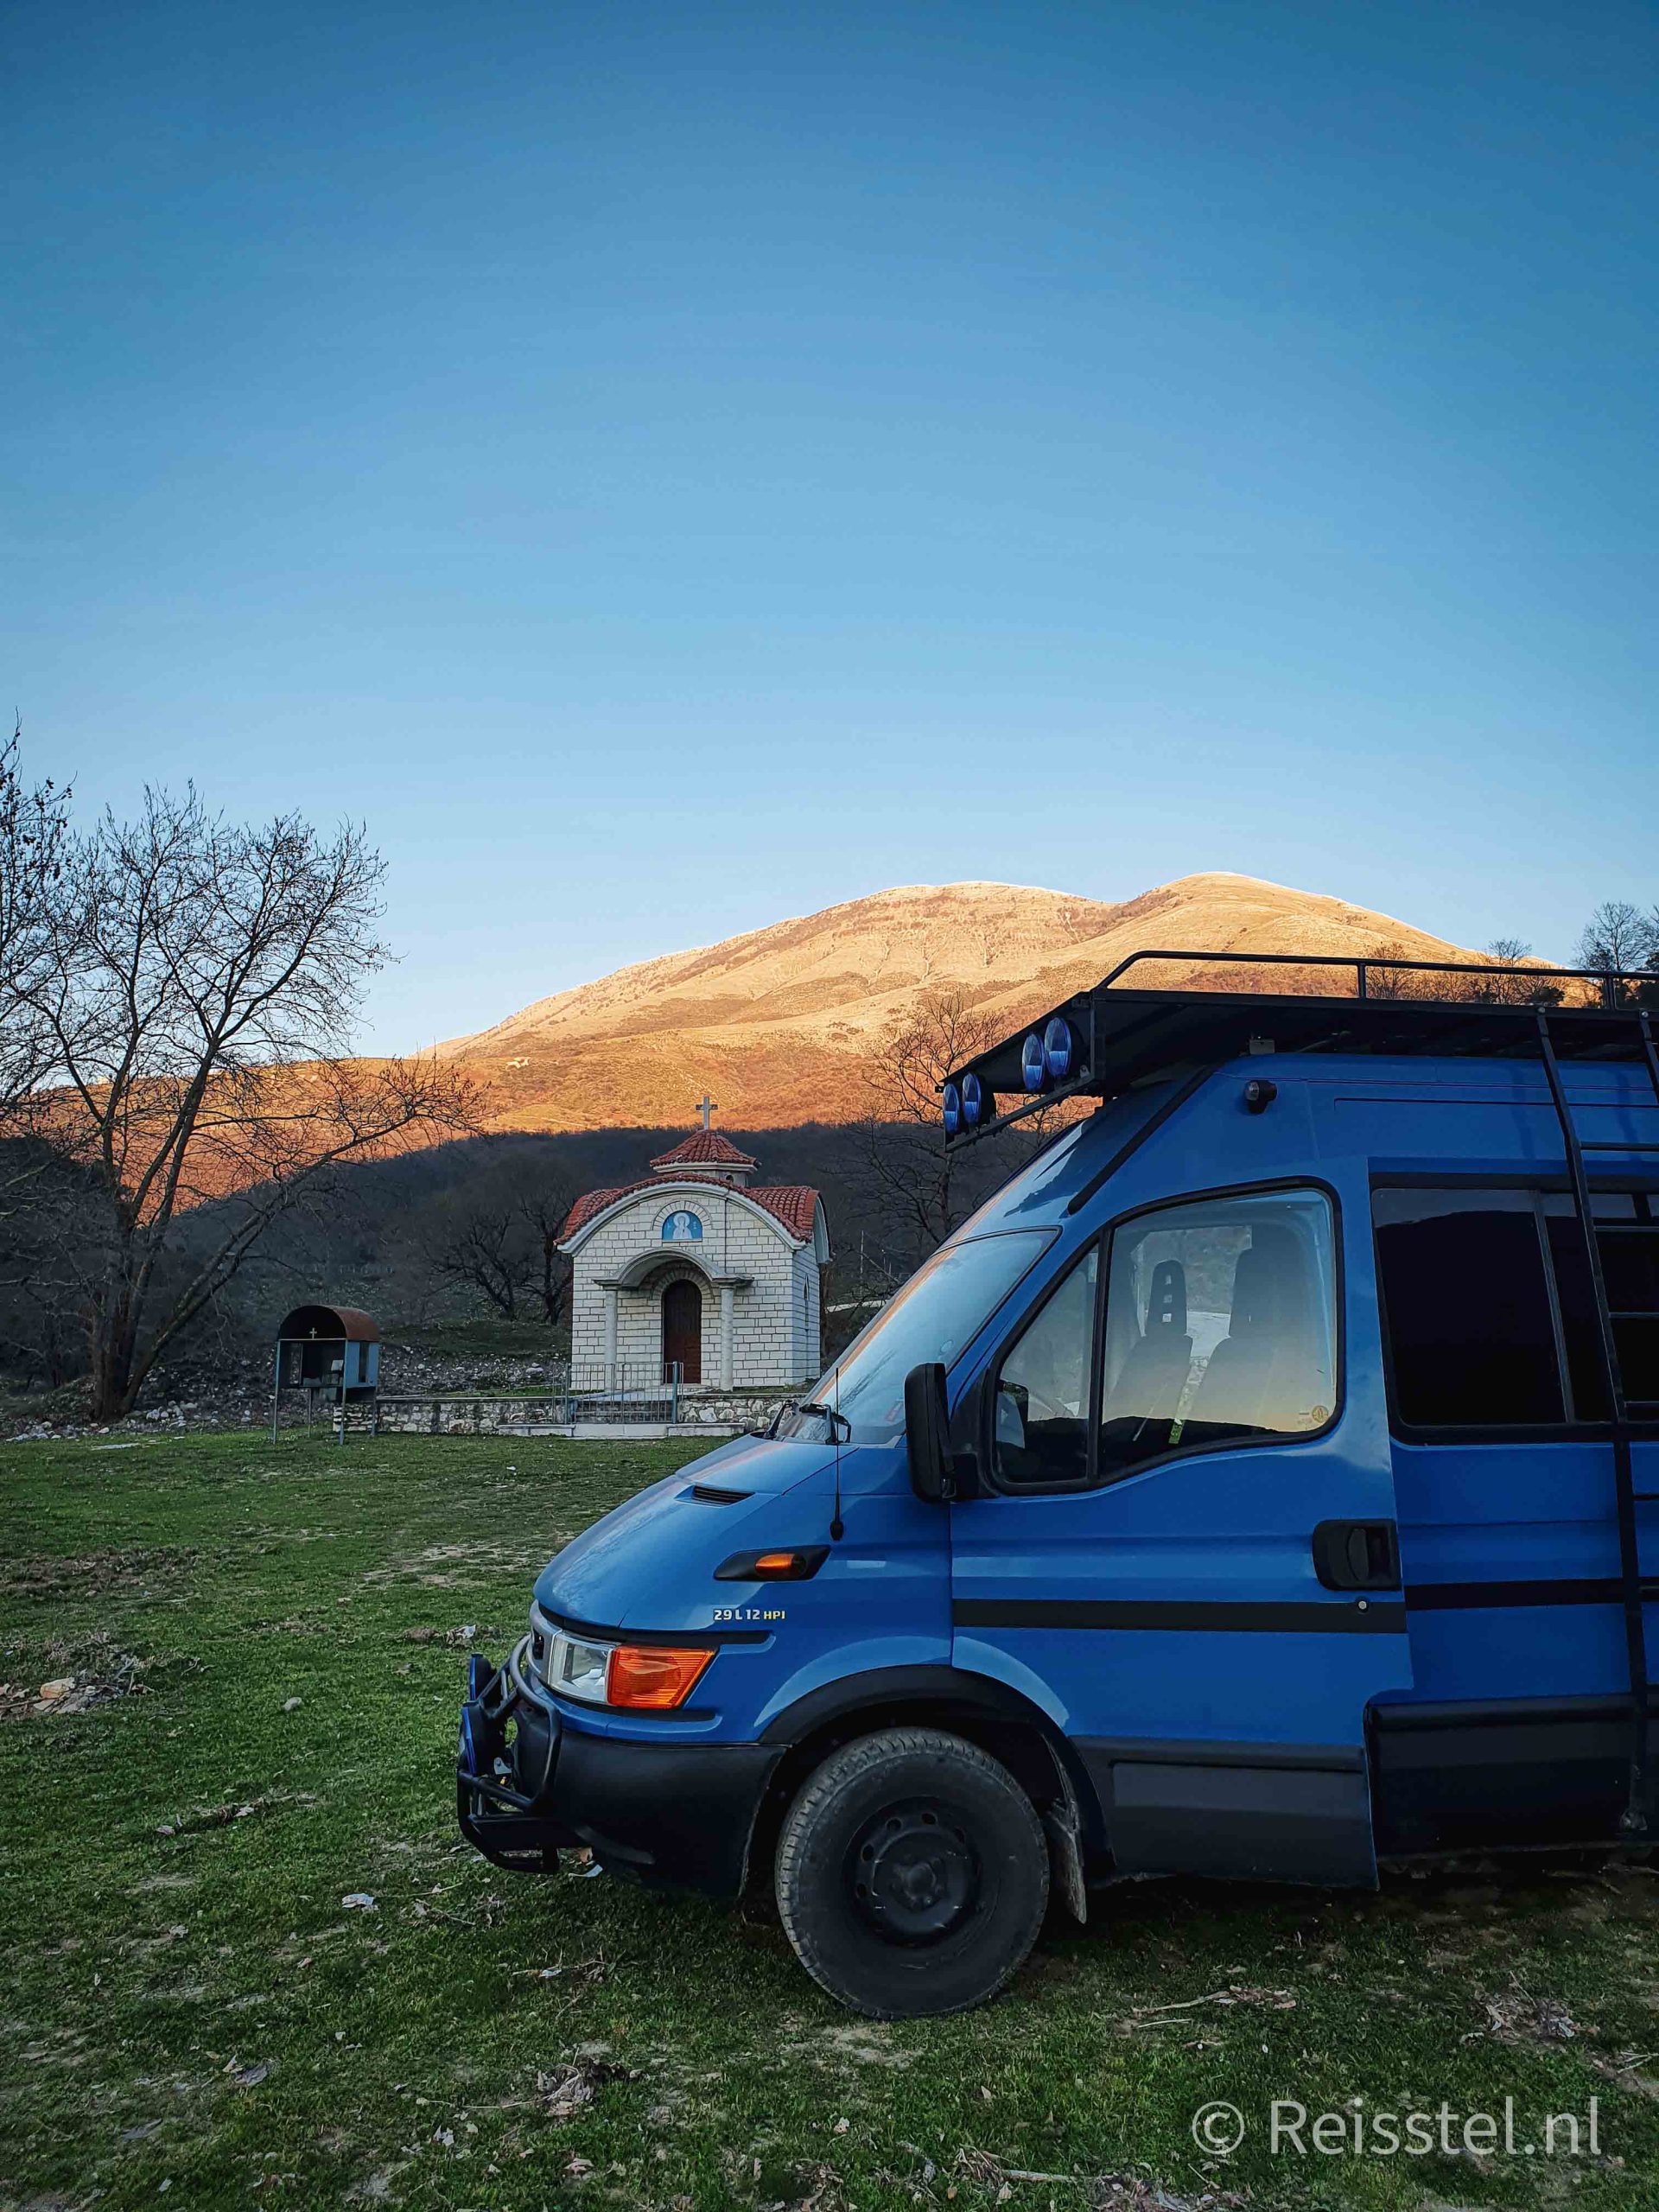 vanlife camping albania